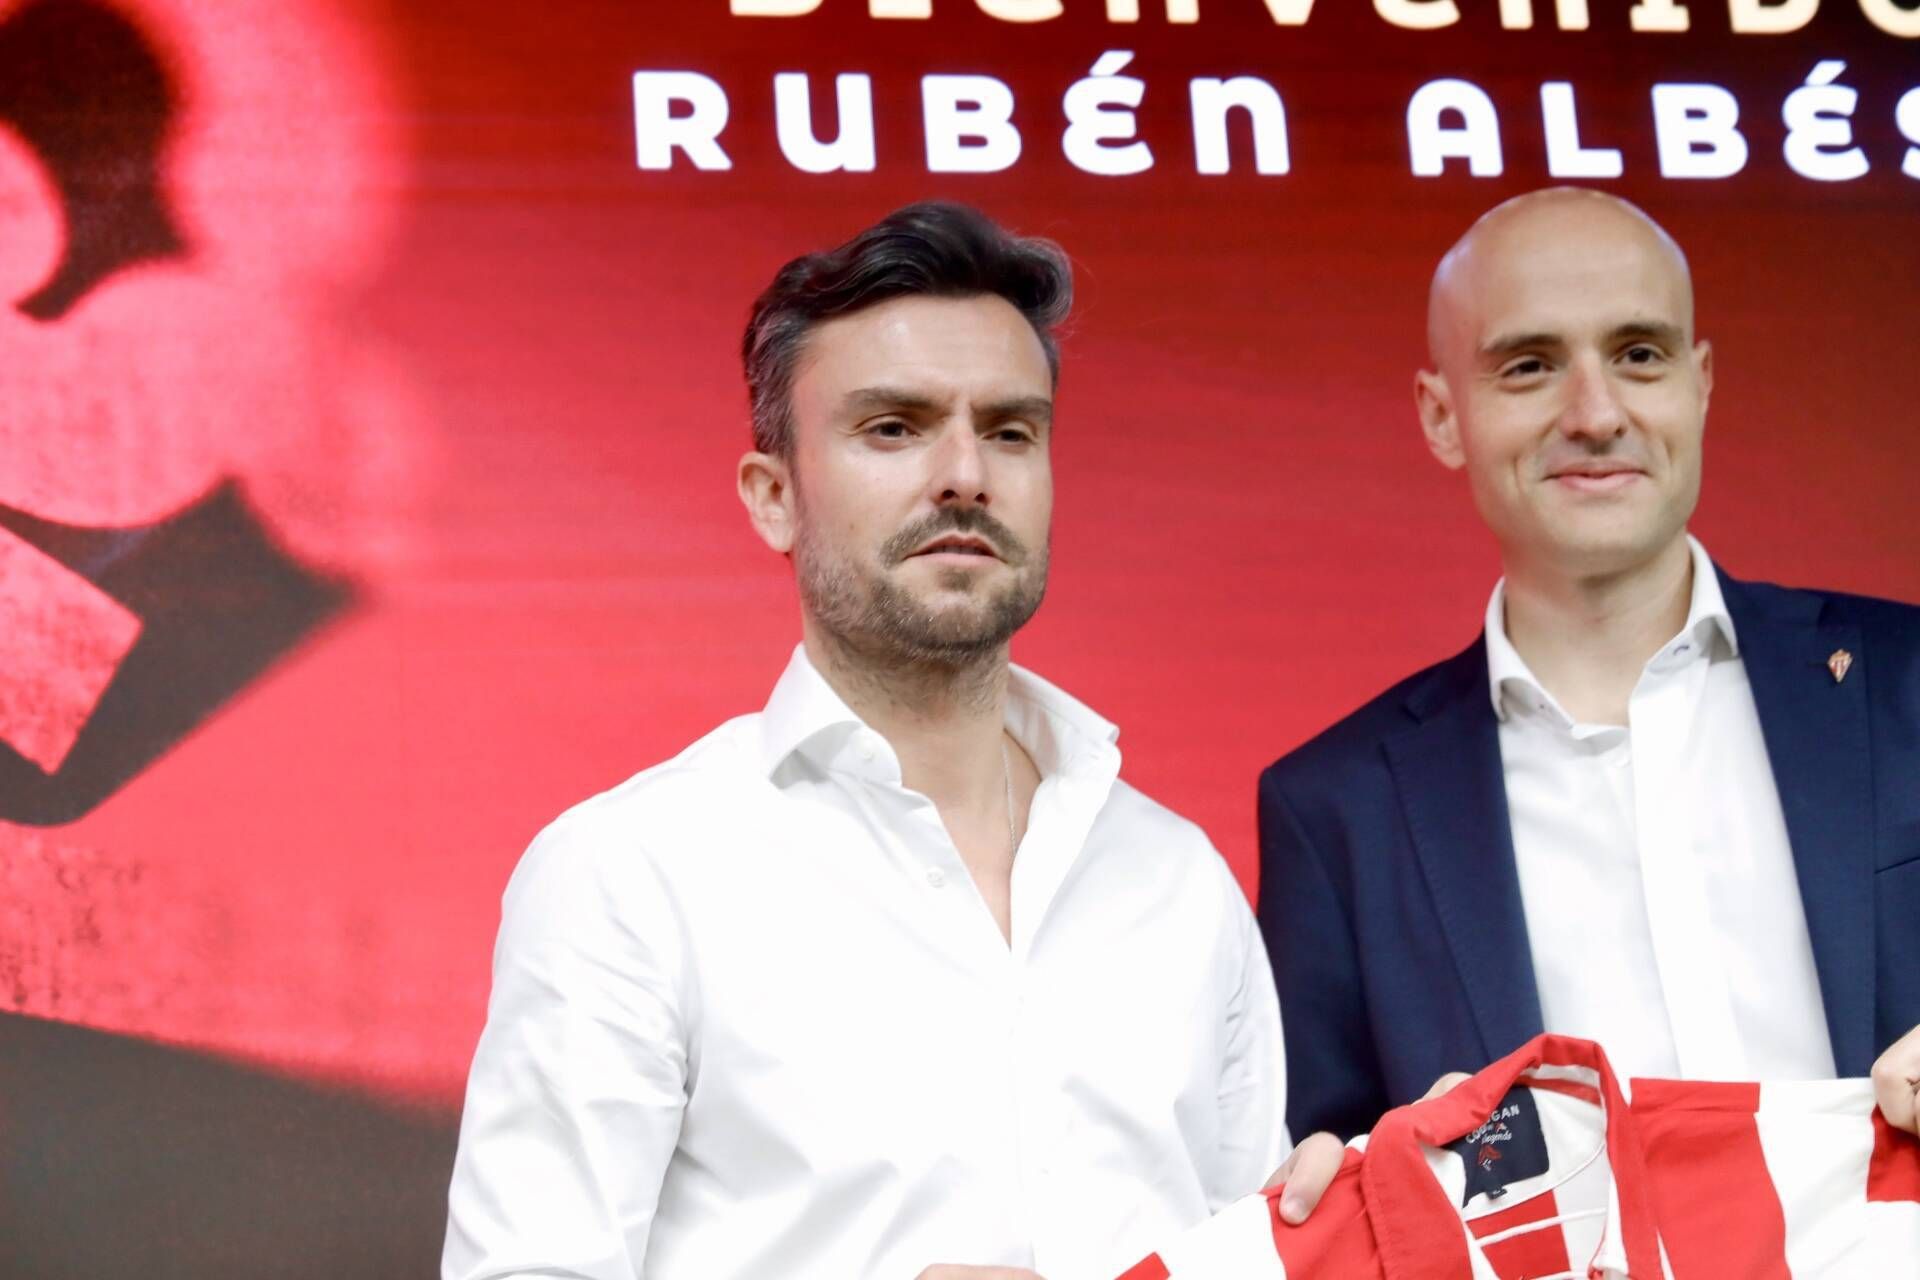 La llegada a Asturias este lunes de Rubén Albés como nuevo entrenador del Sporting acelerará los procesos pendientes, tanto de cesiones como de incorporaciones paralizadas hasta el fichaje del nuevo técnico, que ya está al tanto de las intenciones del club.

